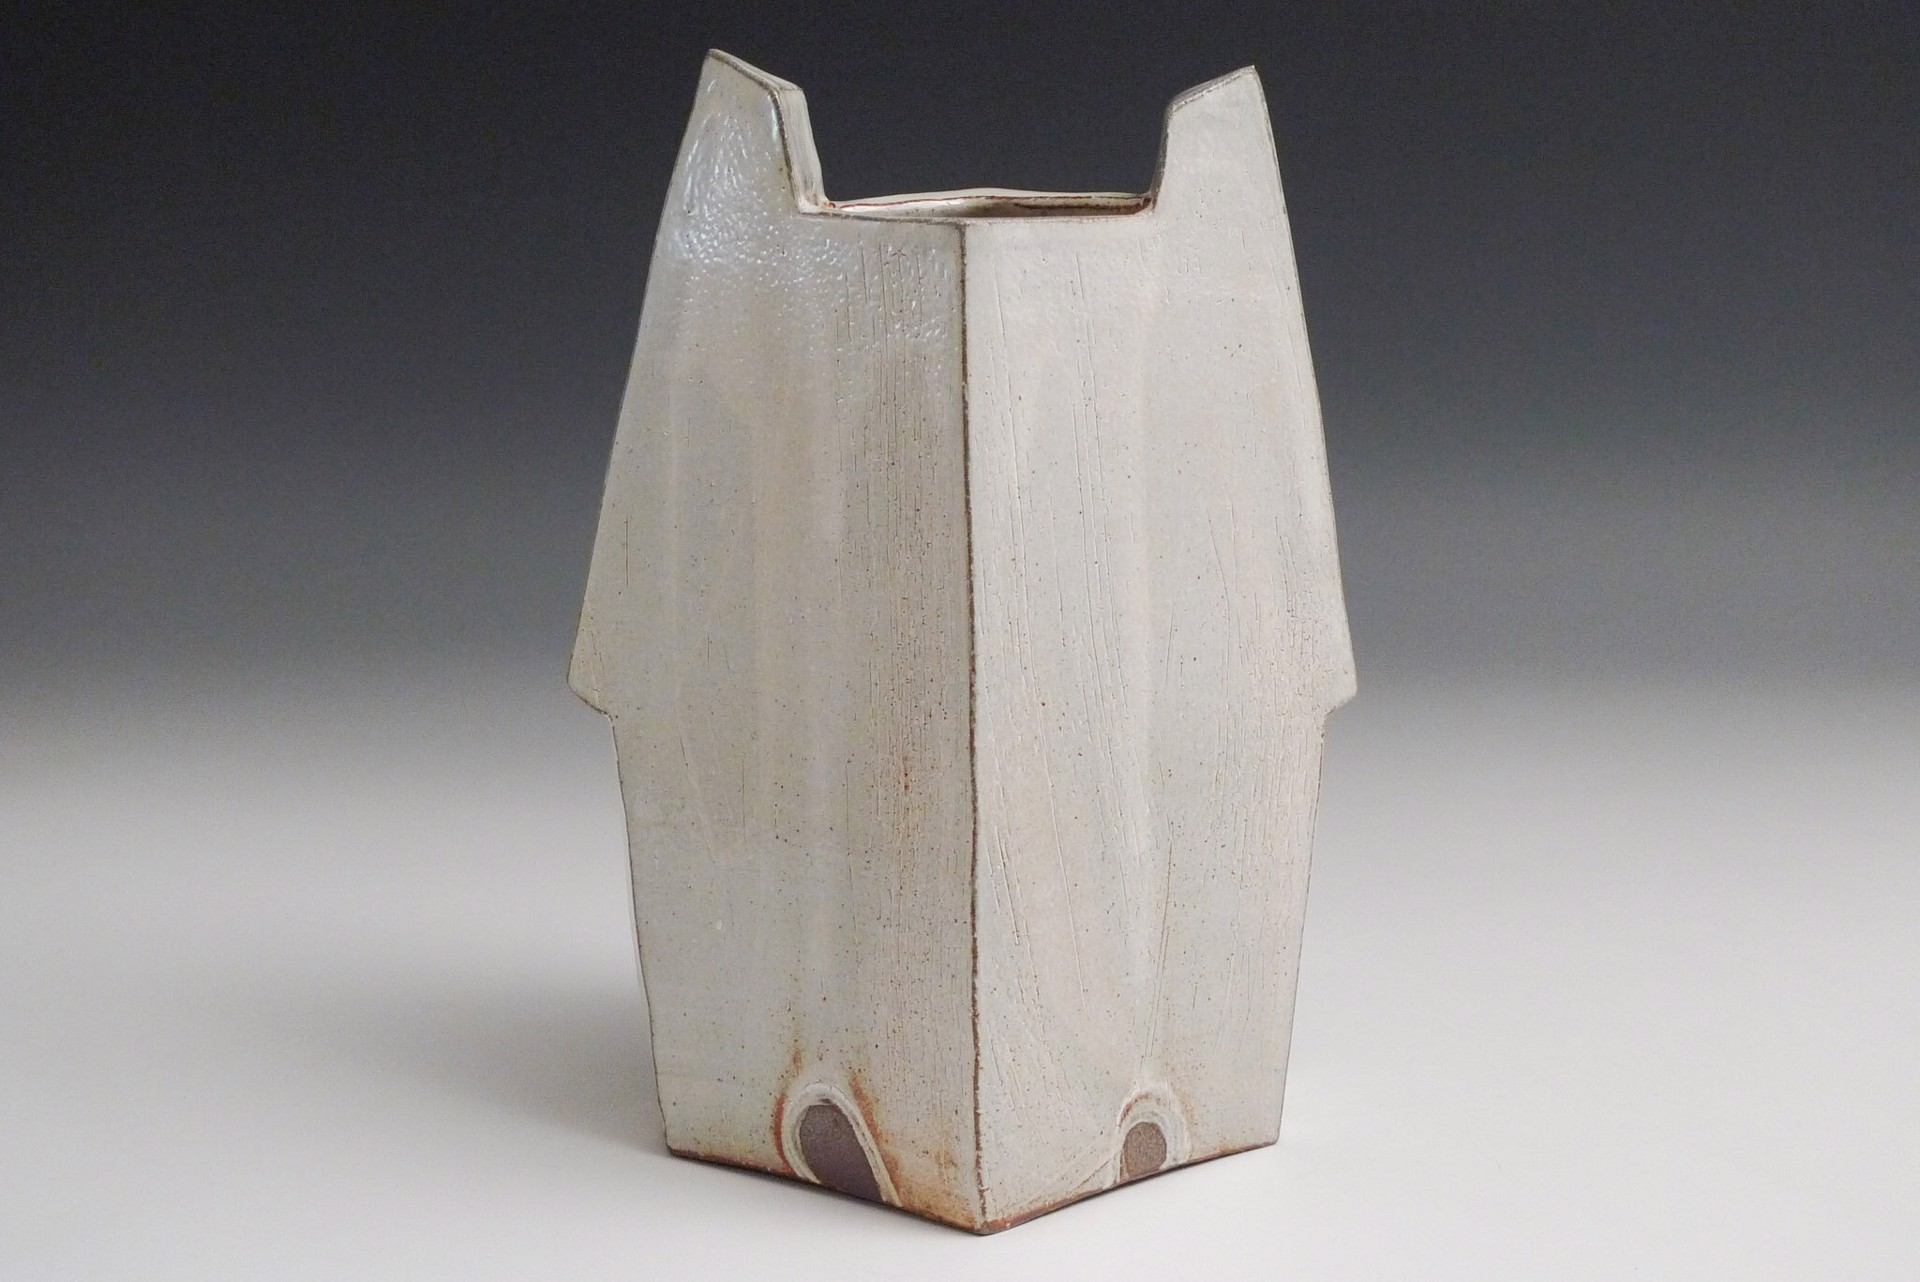 Vase by Ernest Miller